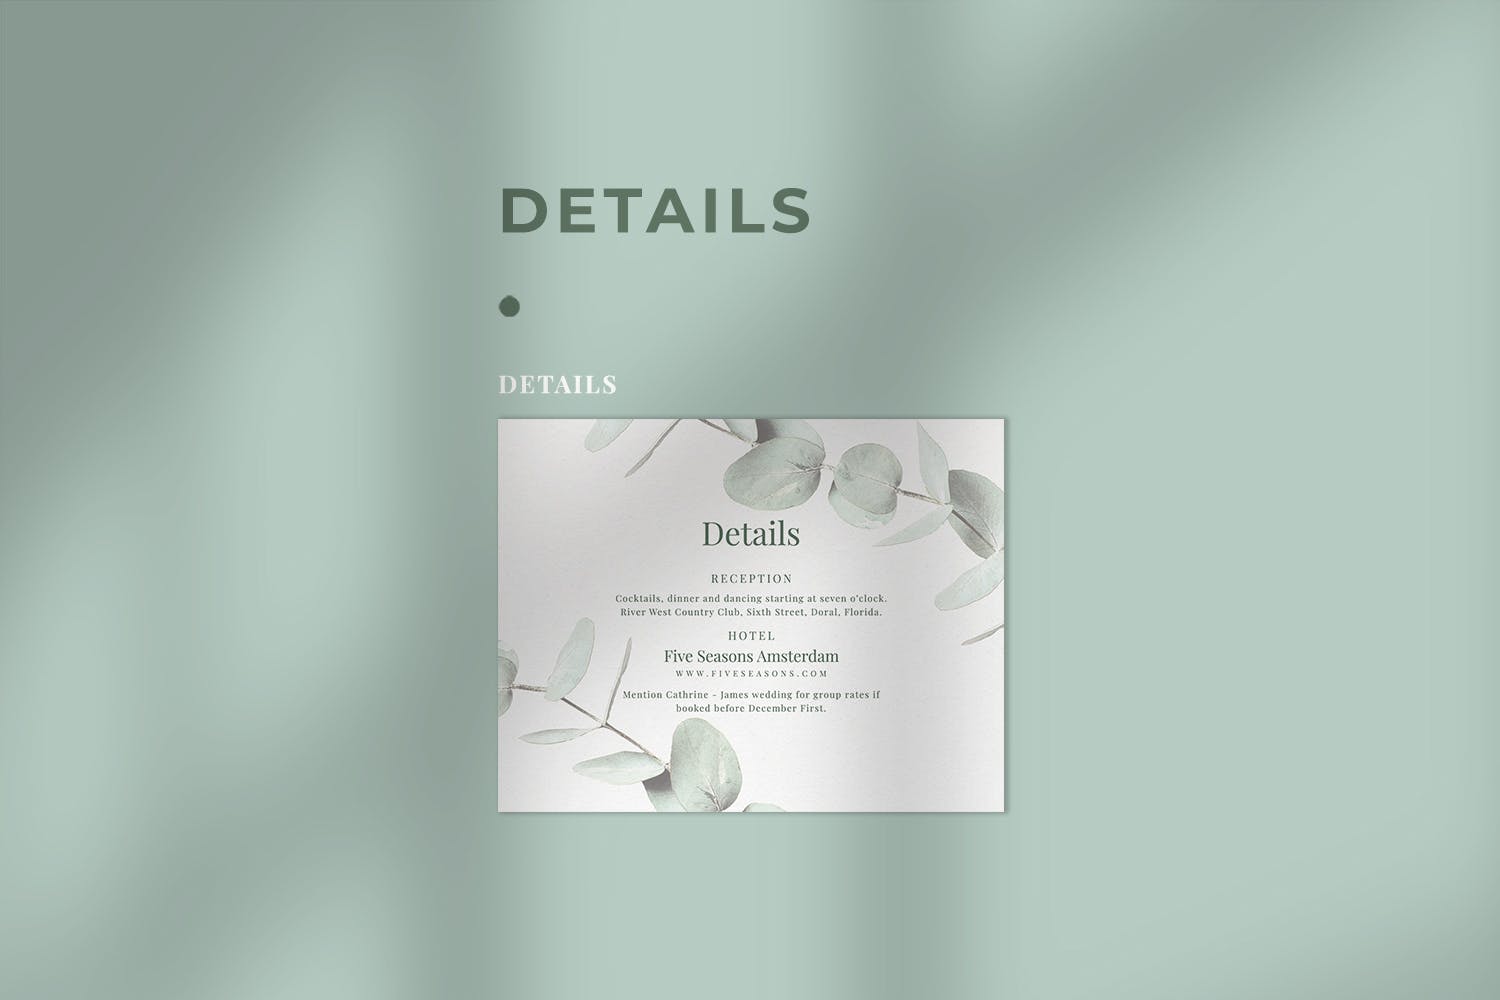 桉树装饰元素婚礼邀请设计素材包 Eucalyptus Wedding Invitation Suite插图(4)